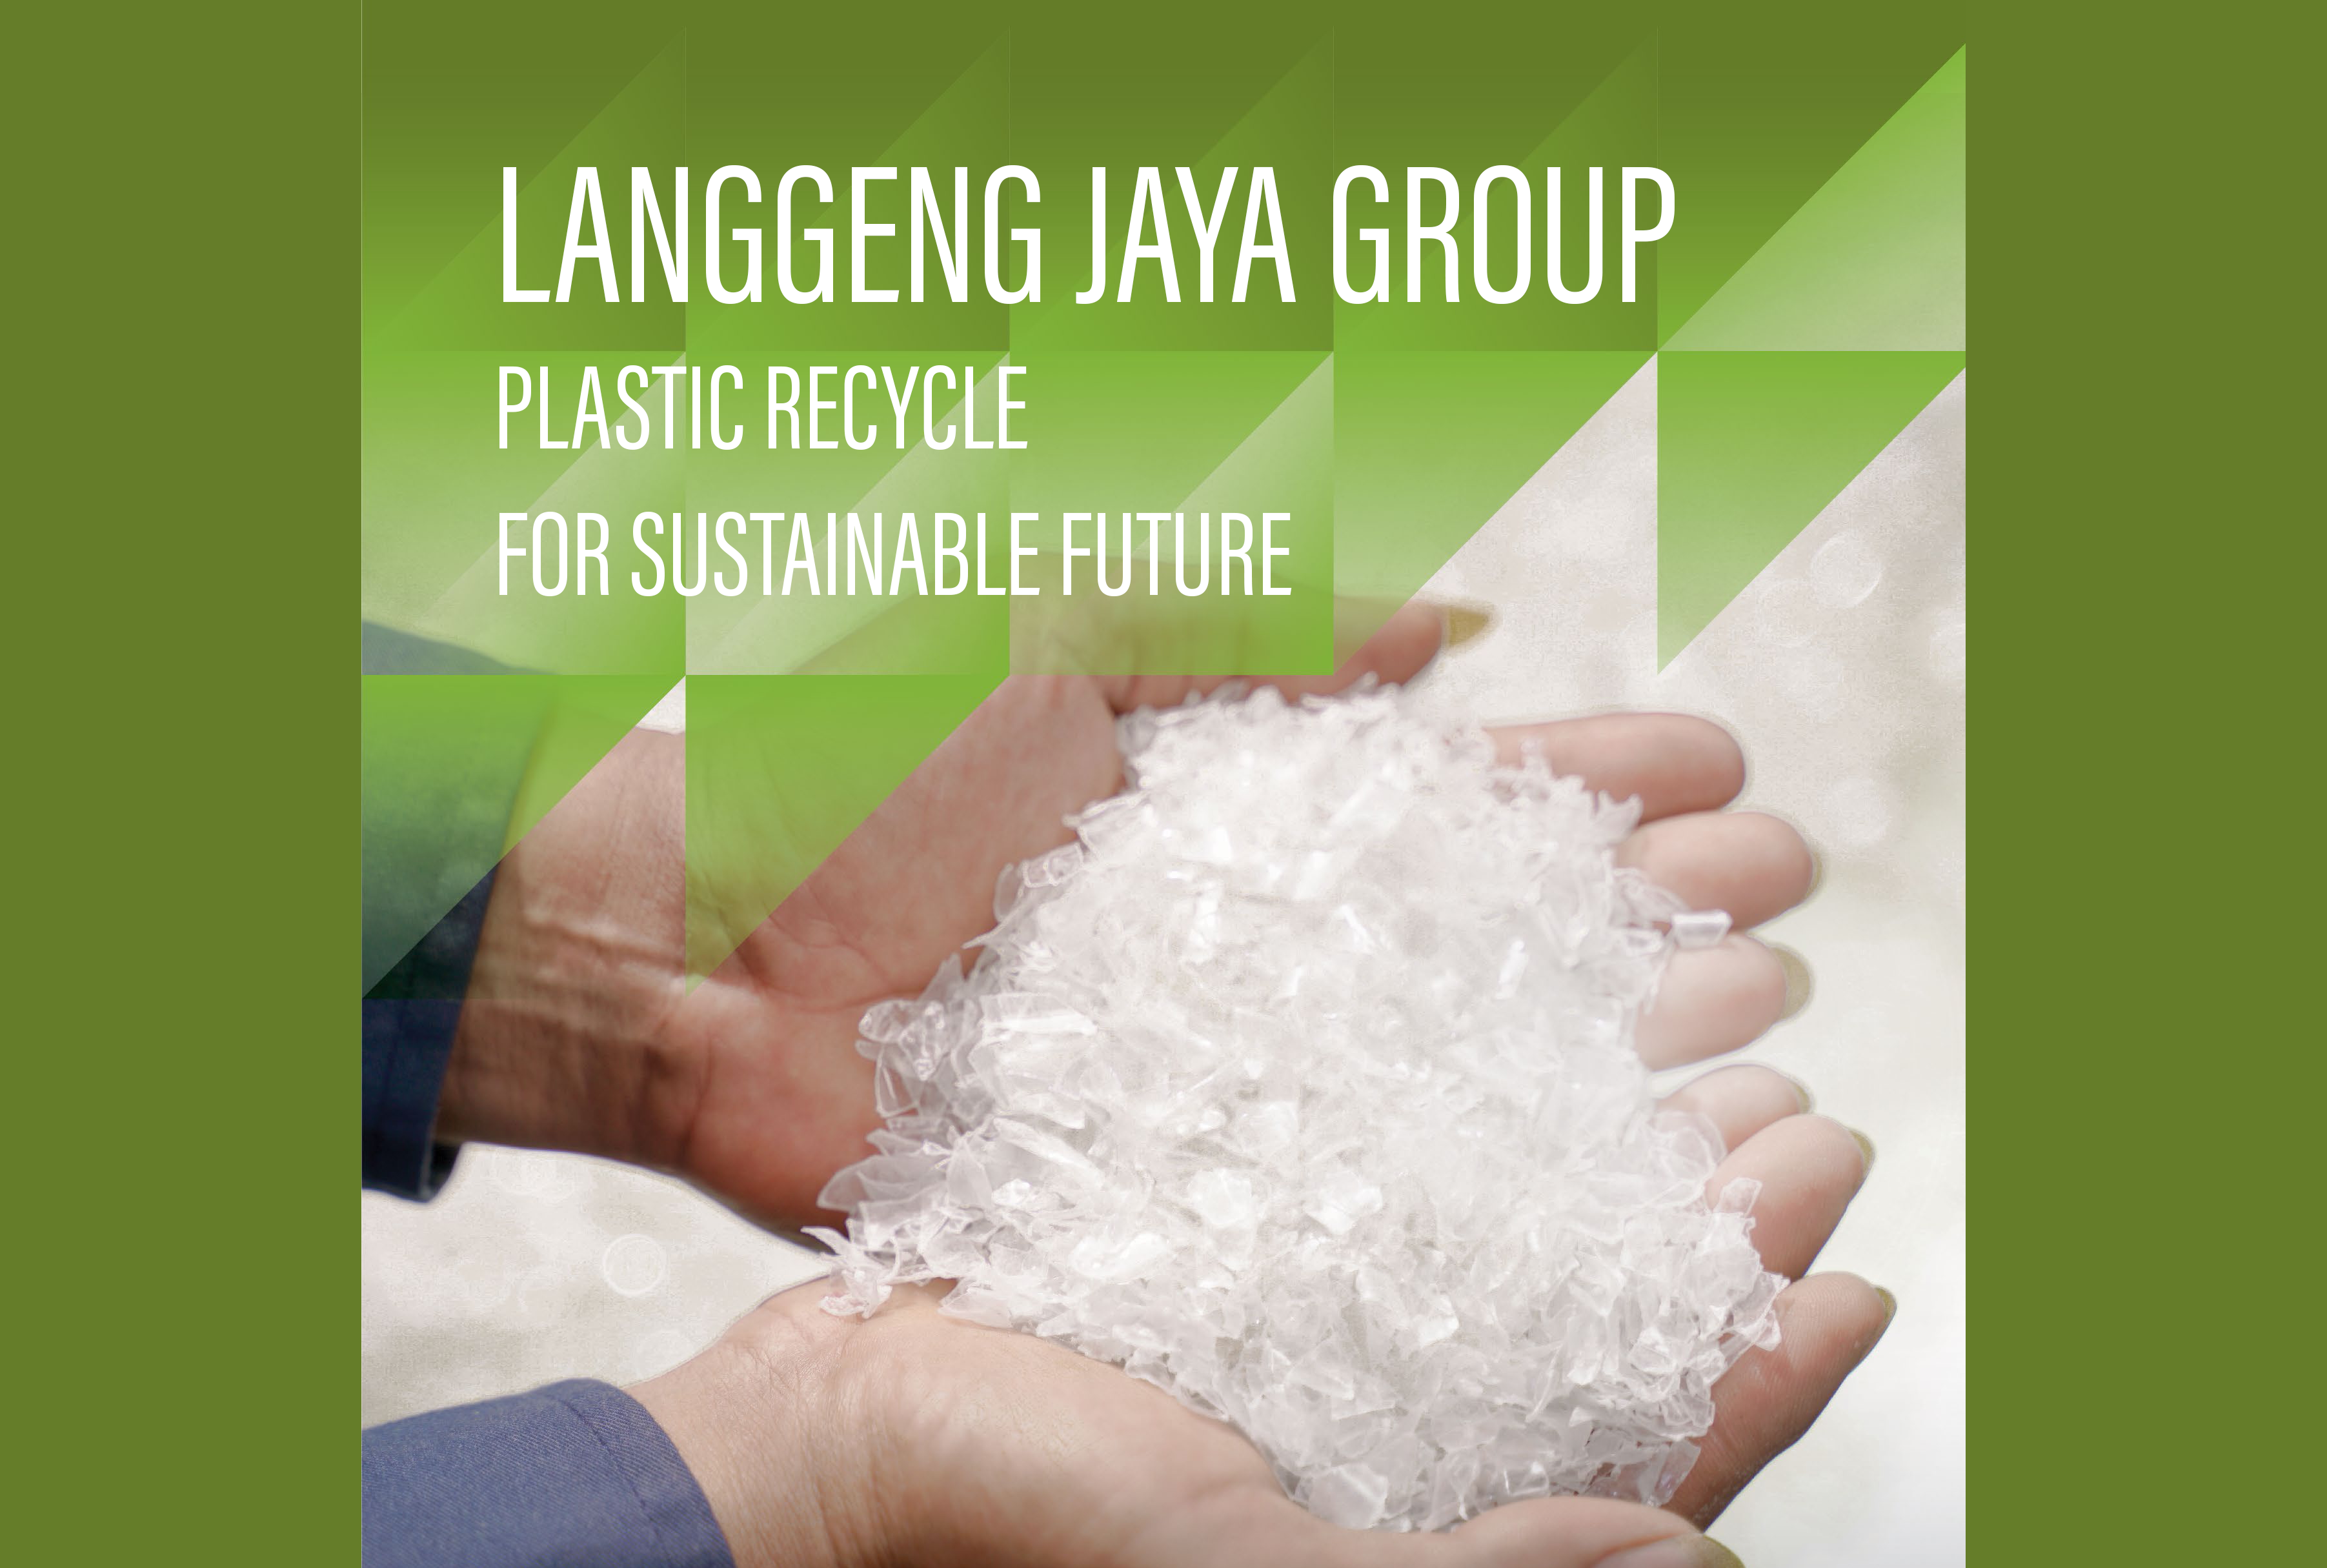 Langgeng Jaya Group